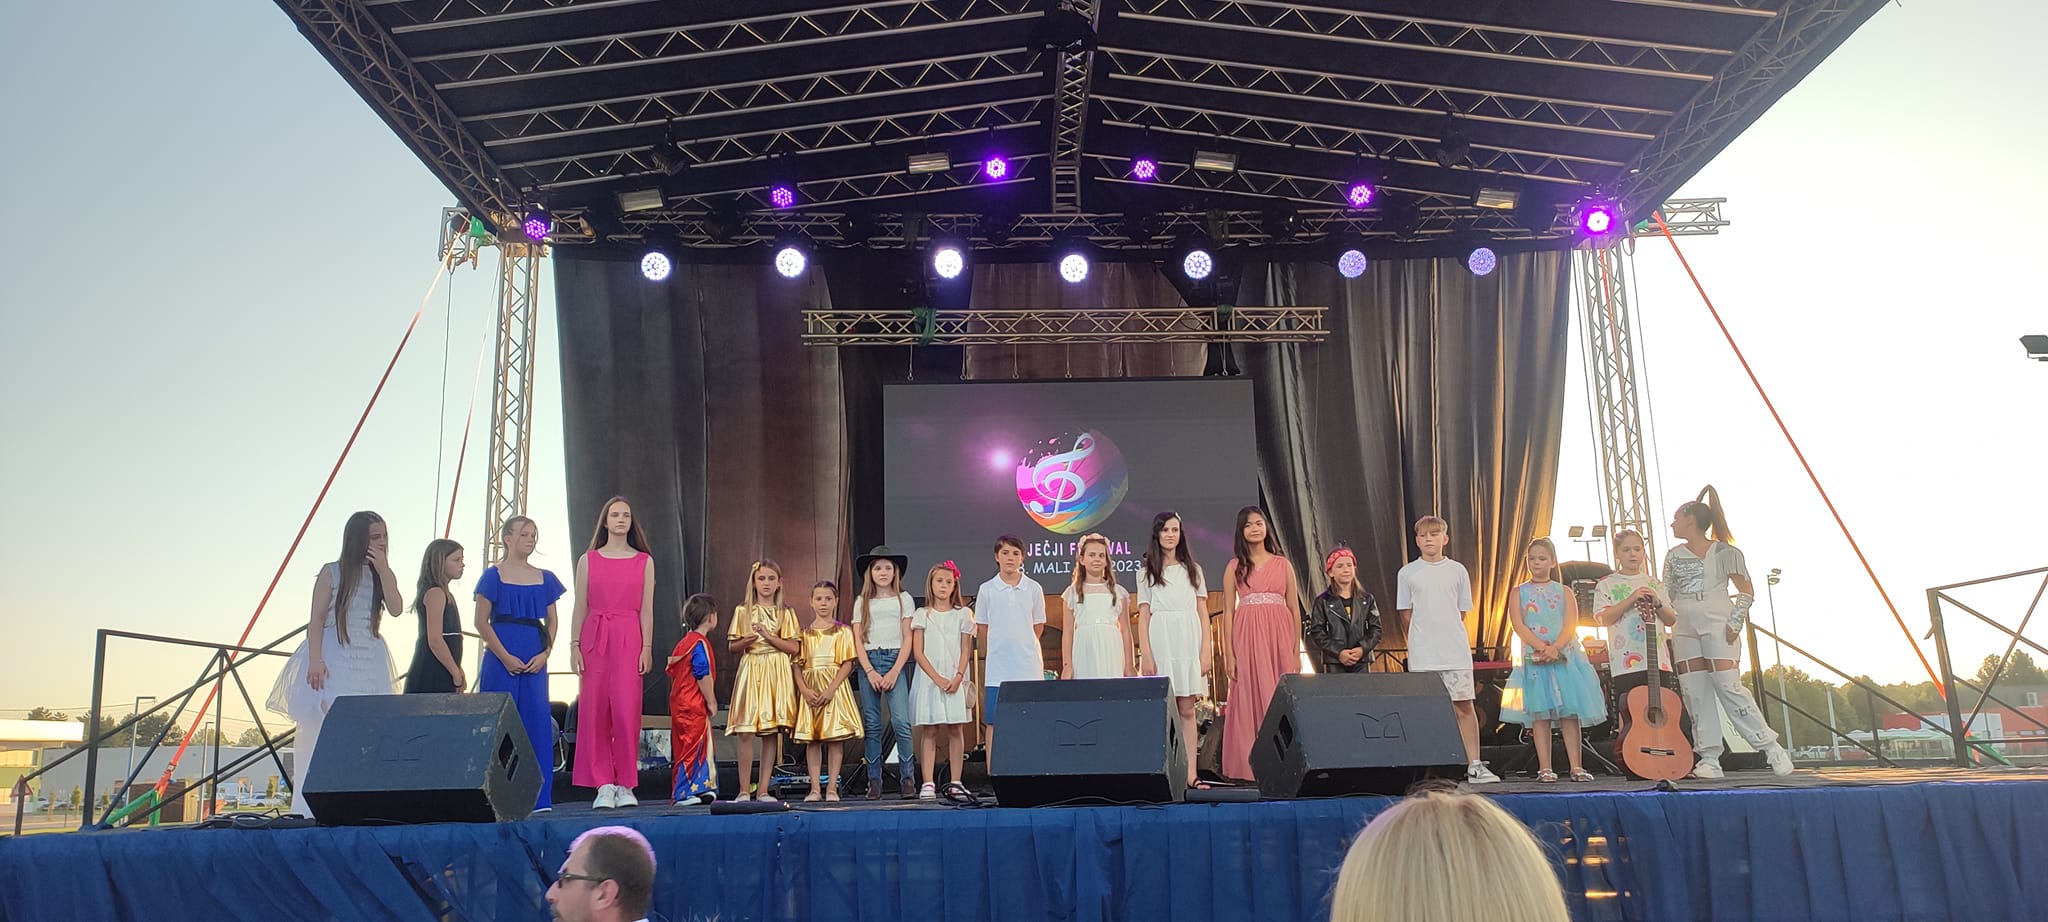 Završeno je izdanje dječijeg internacionalnog festivala "Mali MEF 2023"- Frtutma KIDS osvojili srca publike